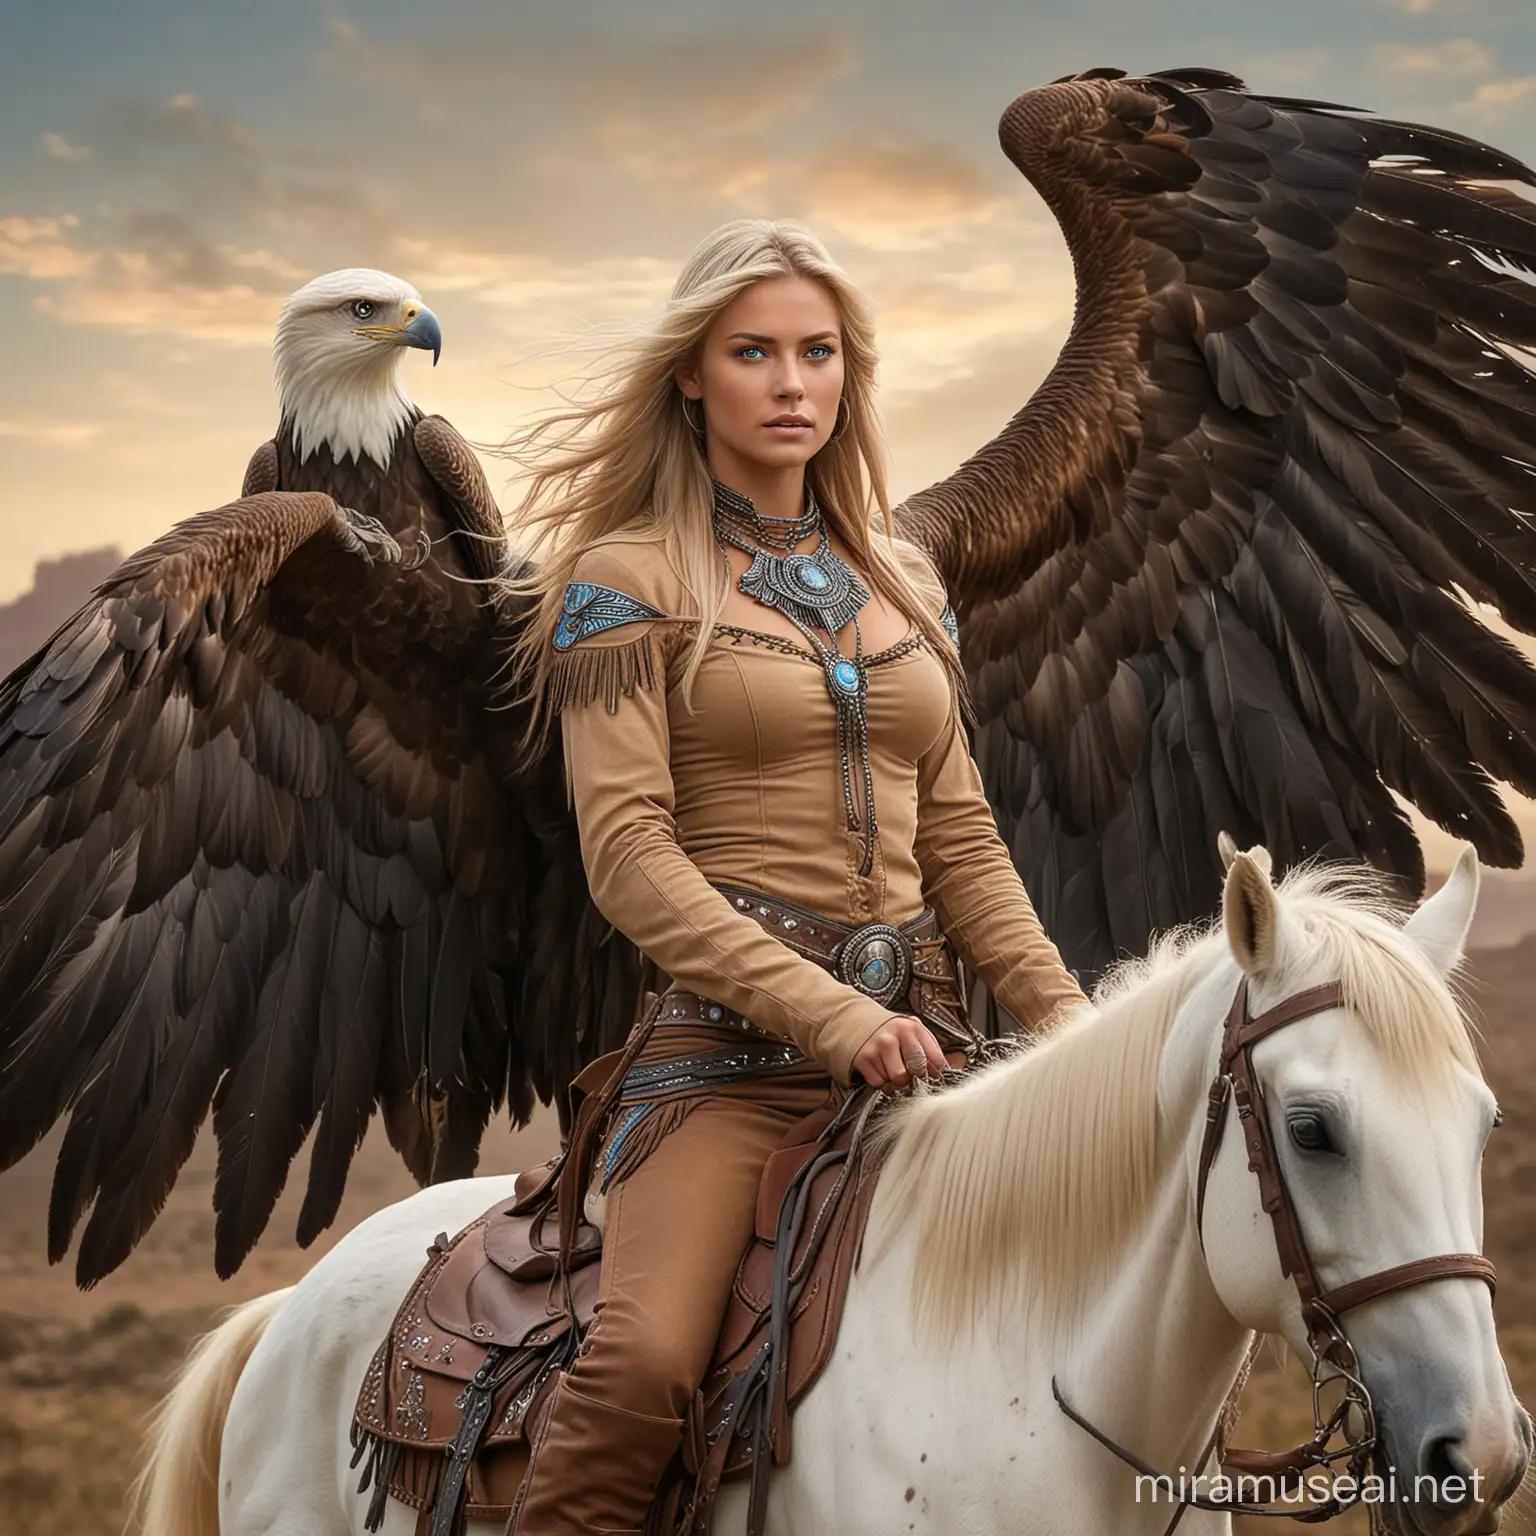 Hermosa vaquera cabellos rubios y ojos azules a caballo, lleva grandes alas largas que le salen de la espalda, y junto a ella va encadenado un guerrero apache alto musculoso guapo de cabellos negros largos y grandes alas de aguila 